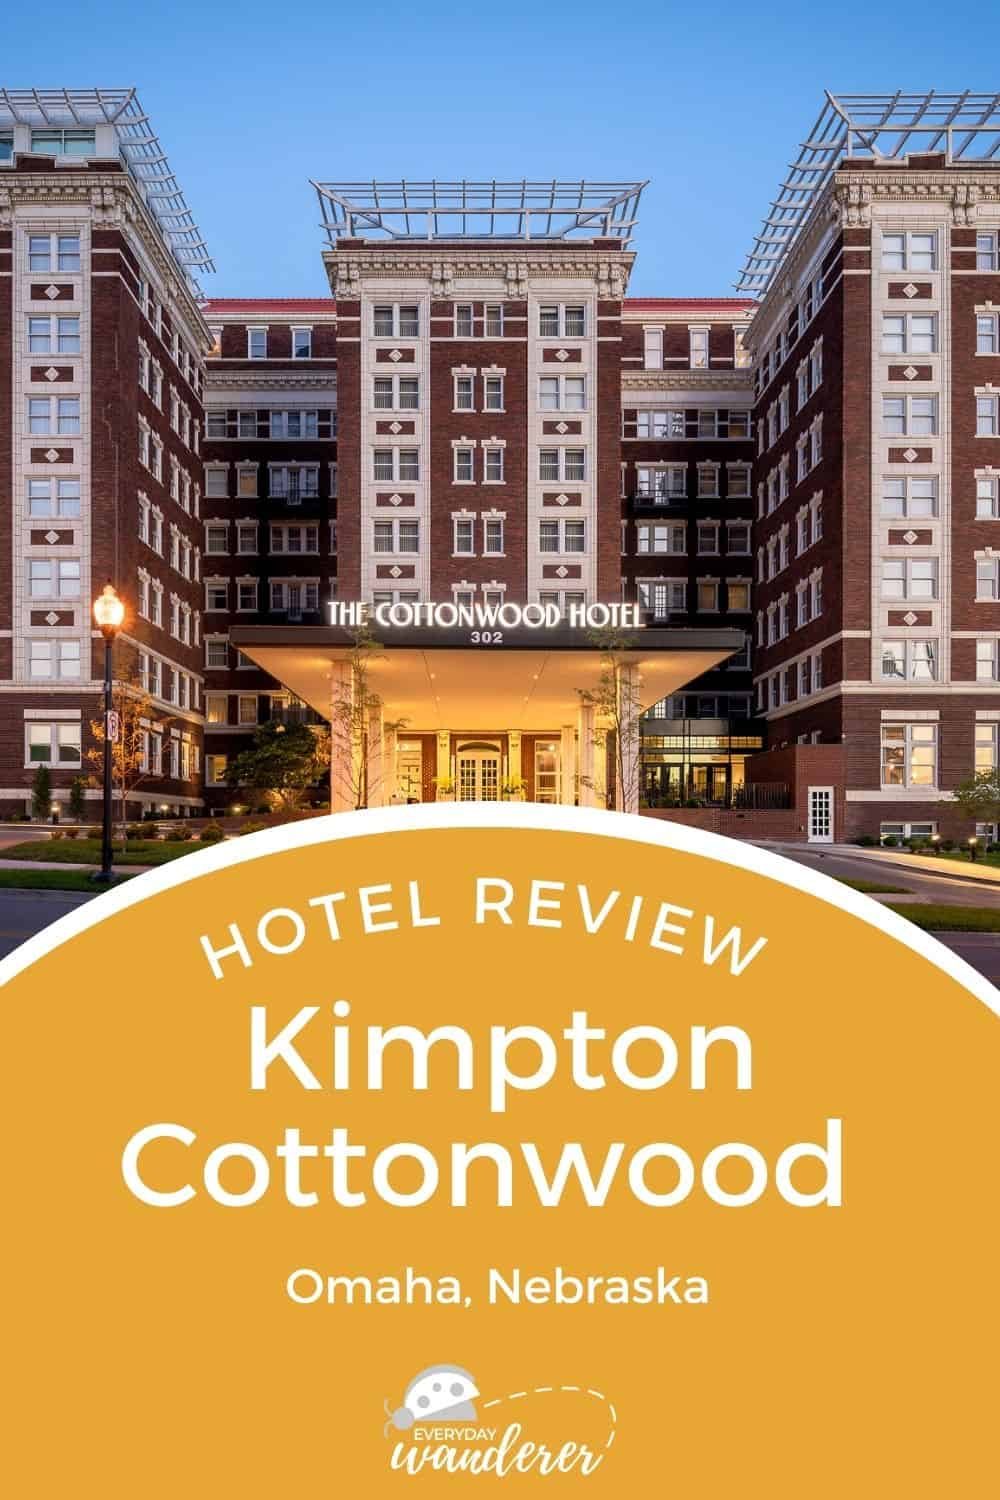 Kimpton Cottonwood Hotel - Pin 5 - JPG